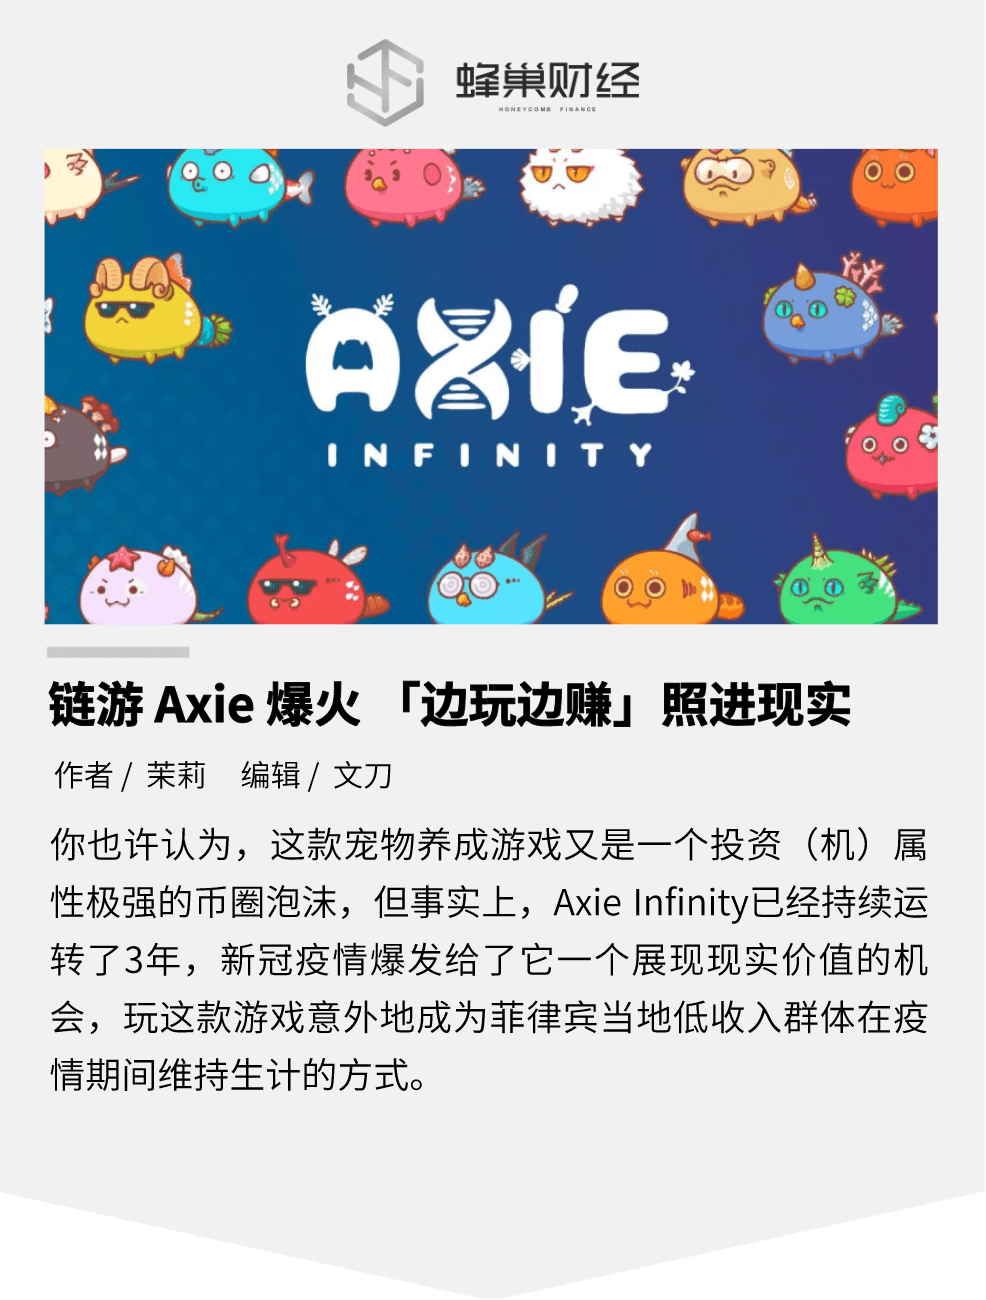 链游Axie Infinity爆火 「边玩边赚」照进现实